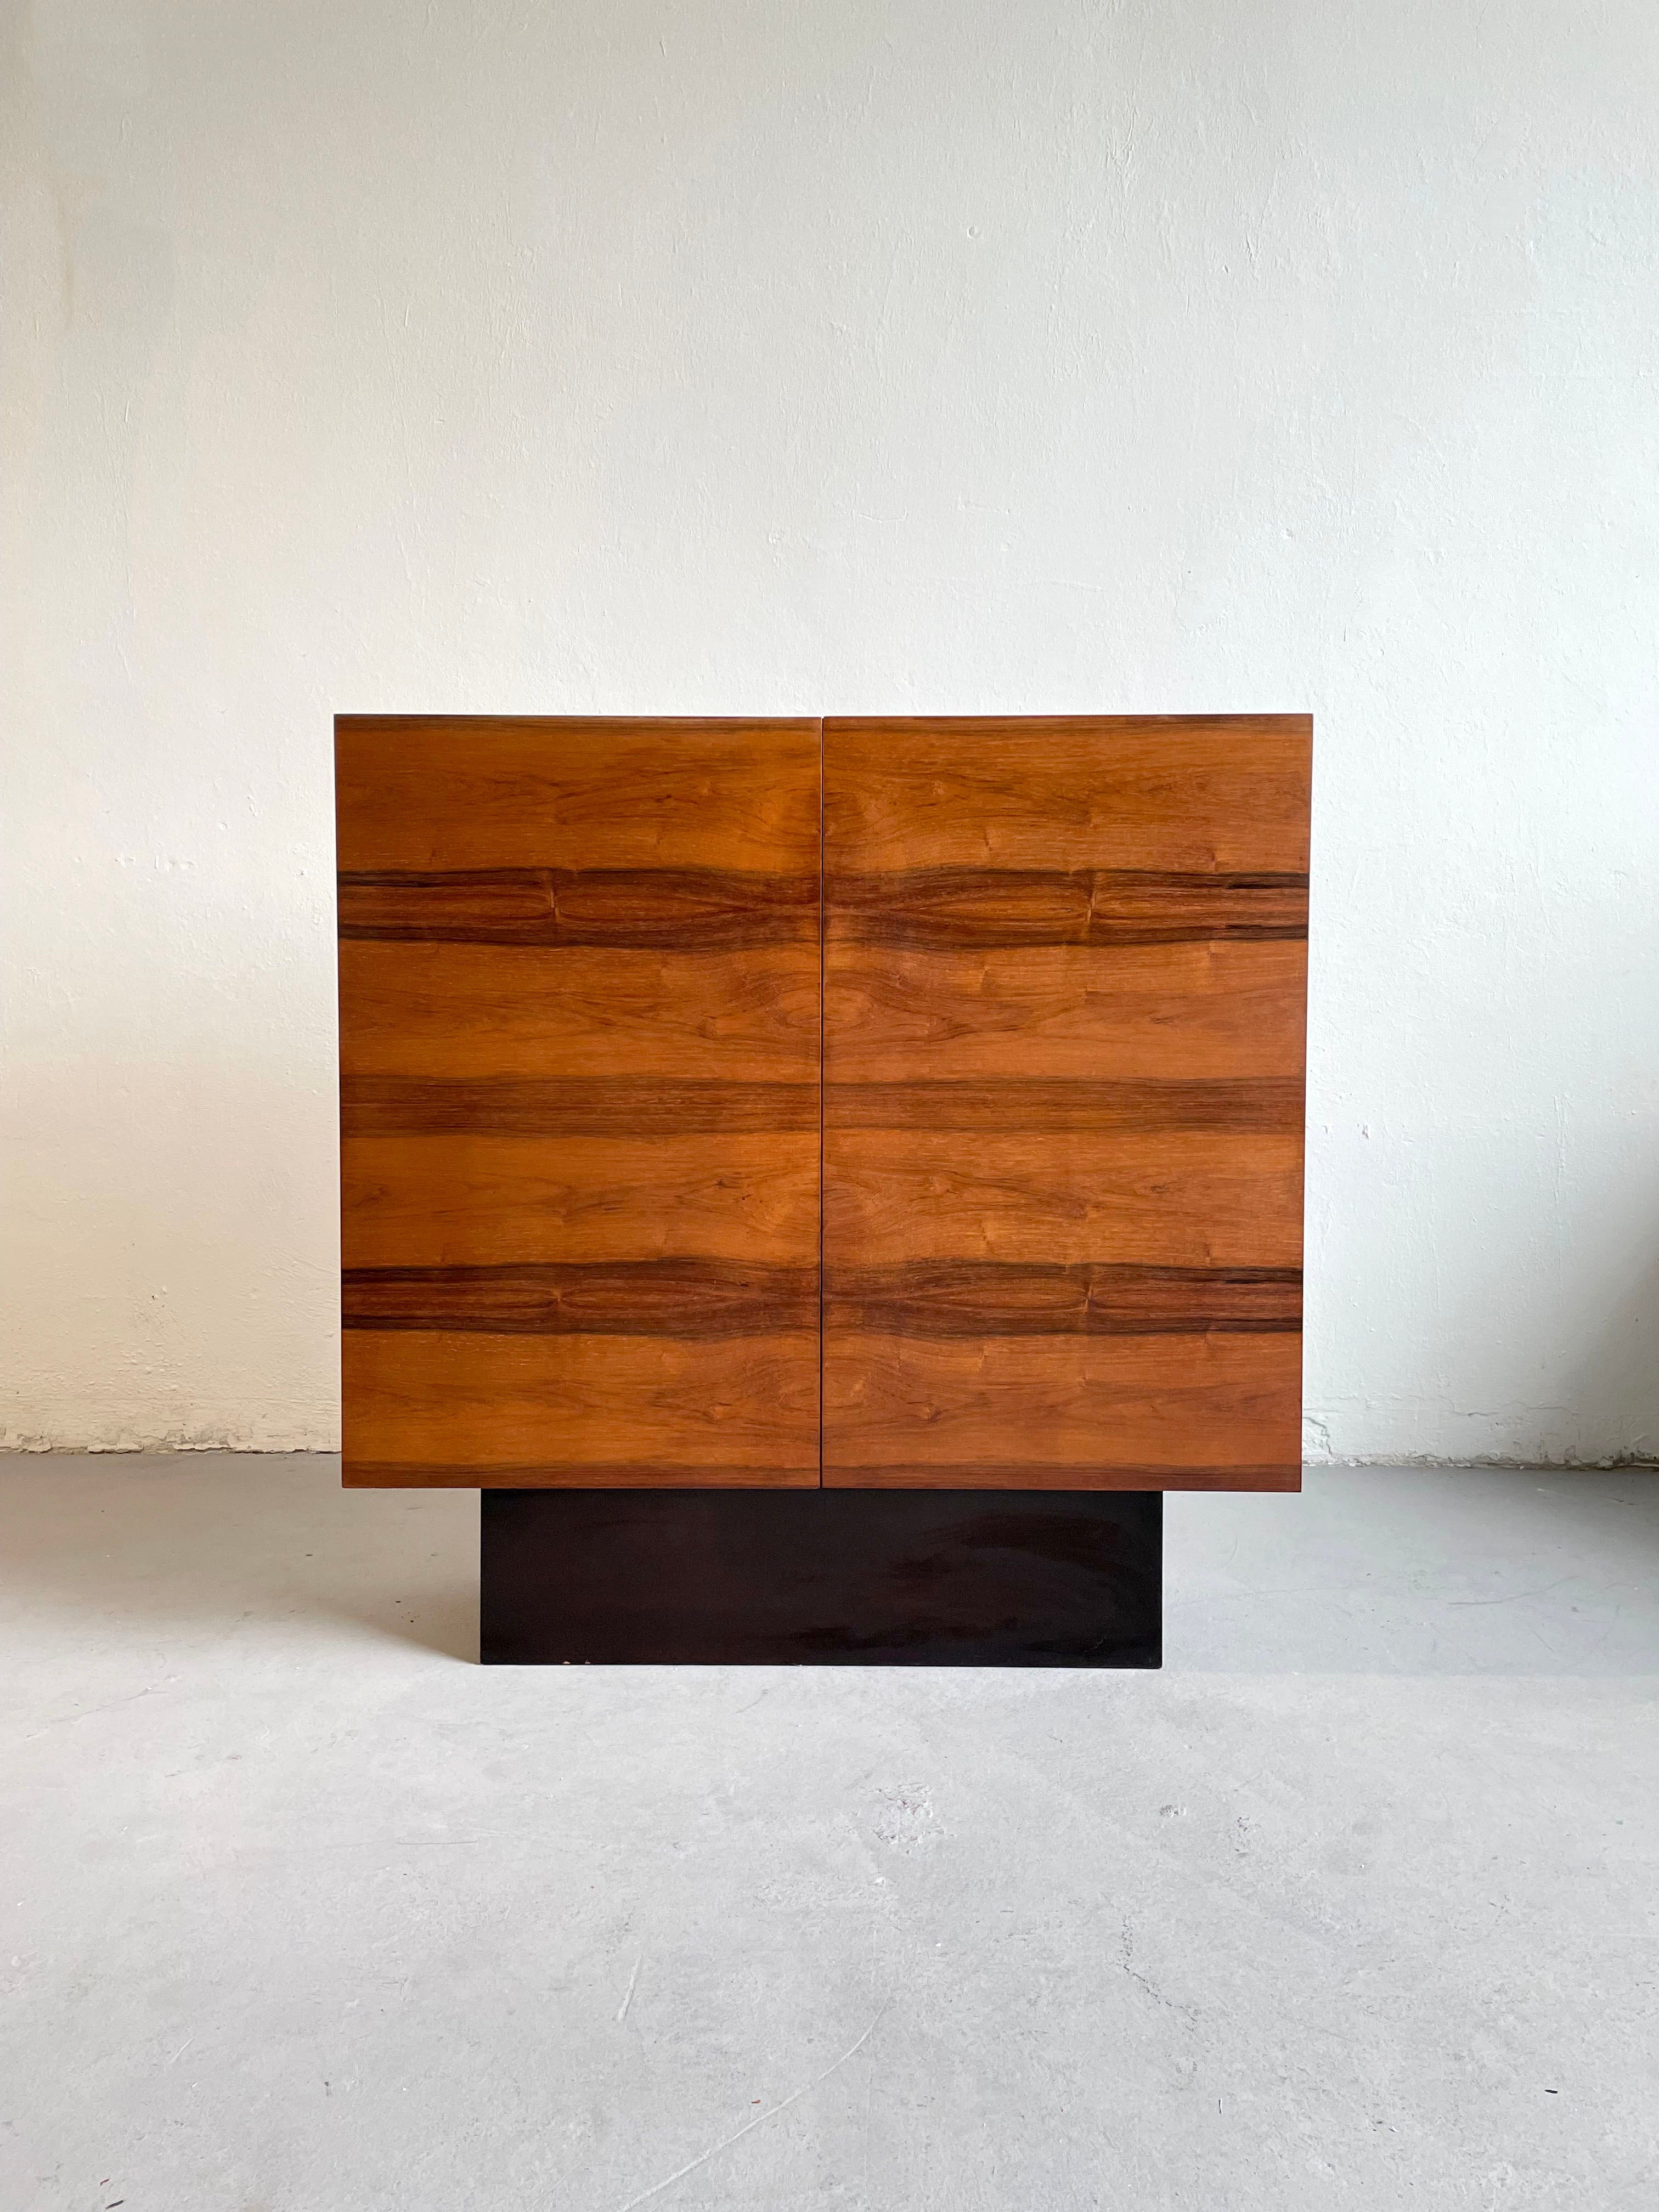 Ce meuble haut de gamme du milieu du siècle, en bois de rose, est fabriqué en Allemagne dans les années 1970.

Un design minimaliste intemporel très sophistiqué, avec une porte d'entrée en bois de rose et une base et un cadre en bois noir